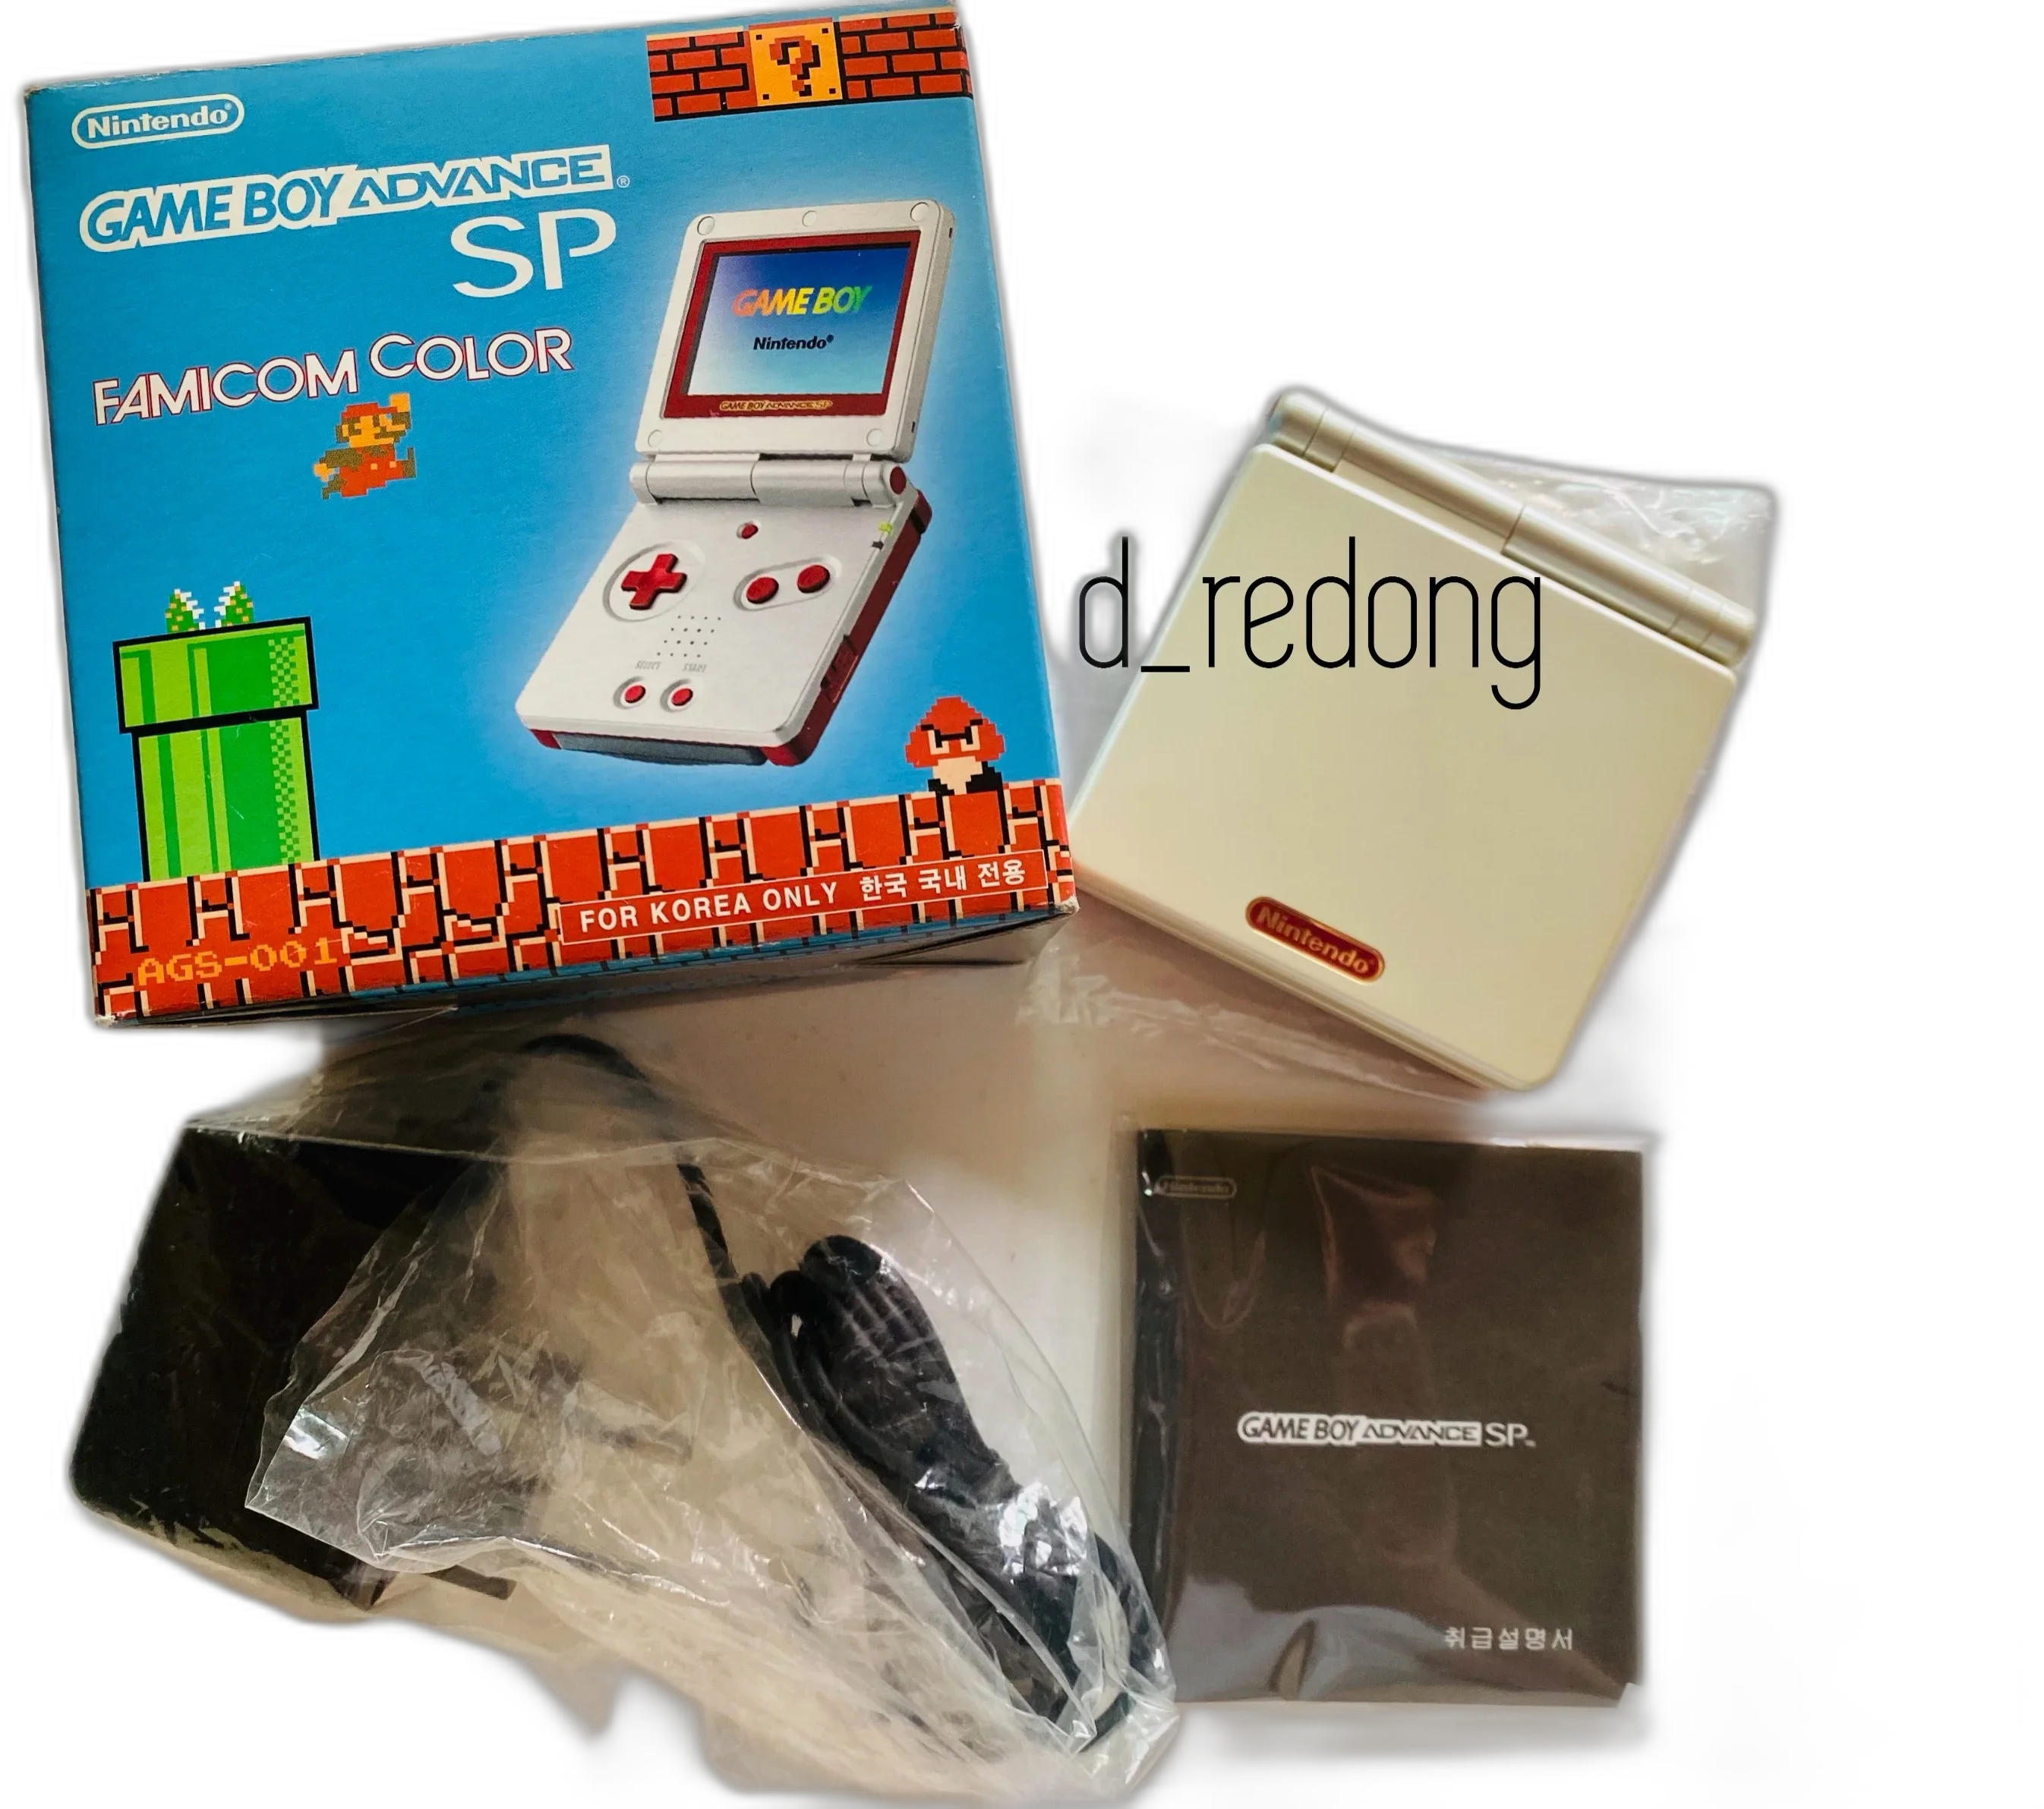  Nintendo Game Boy Advance SP Famicom Console [KOR]